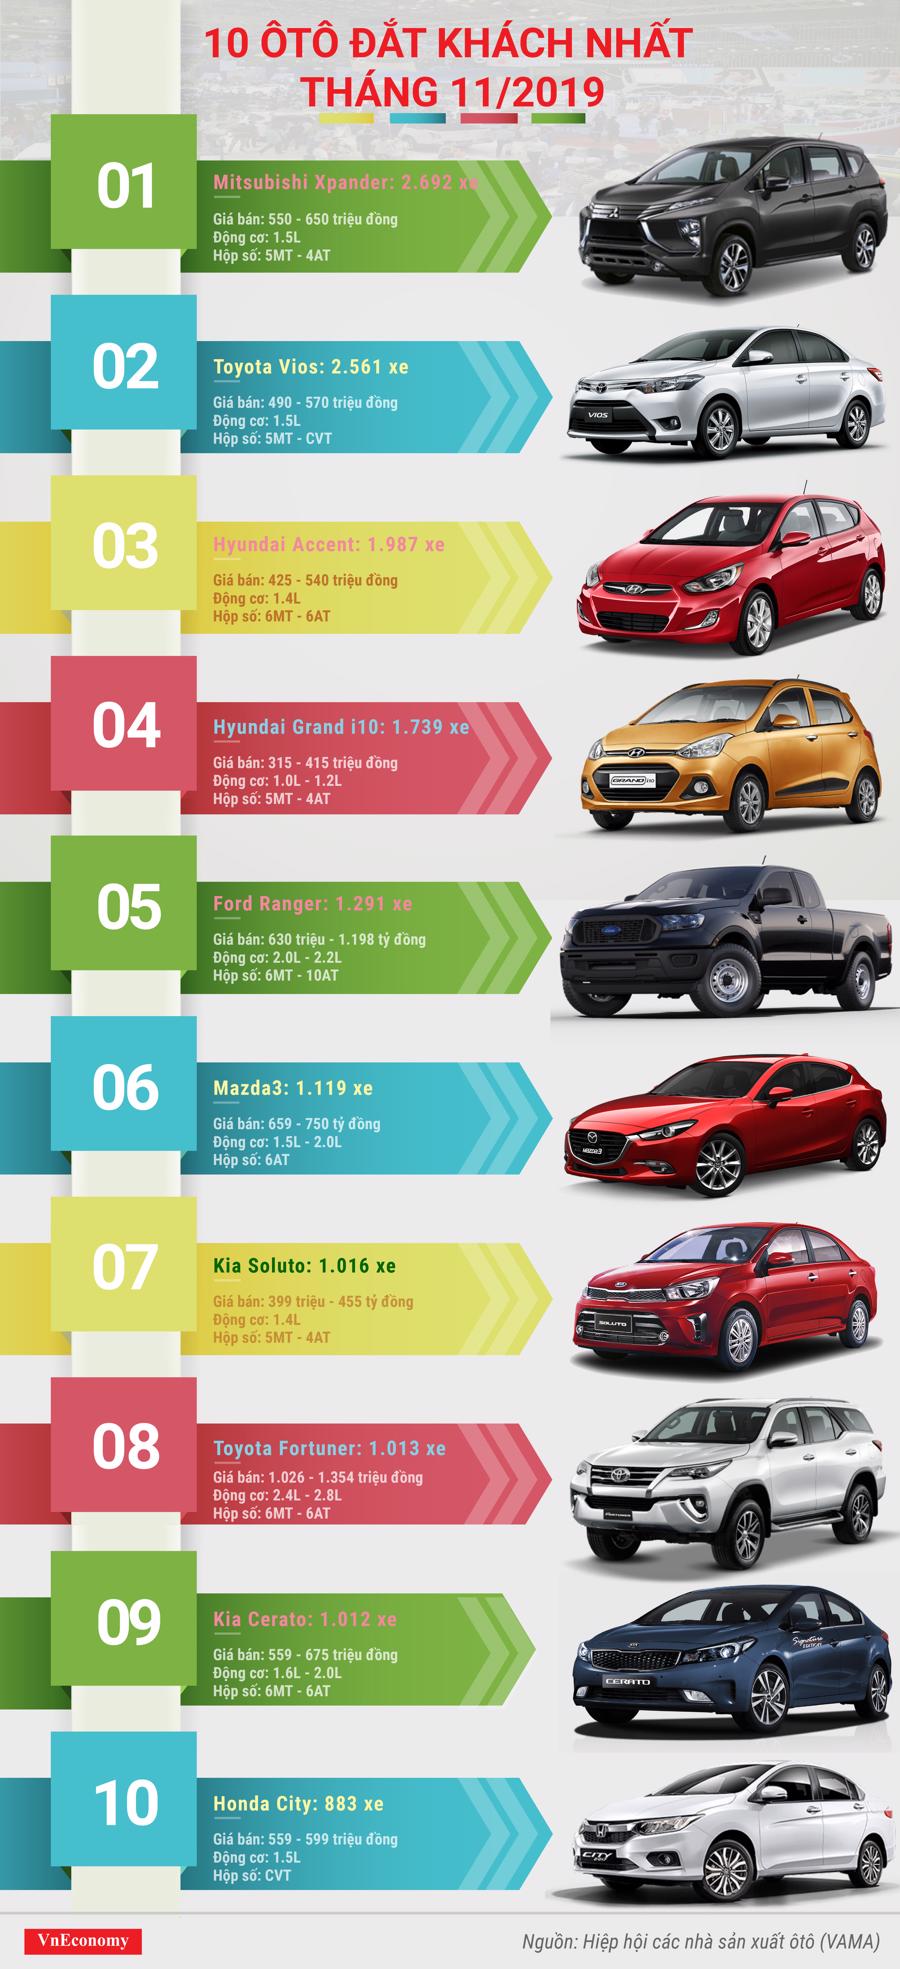 top 10 ô tô đắt khách tháng 11 năm 2019